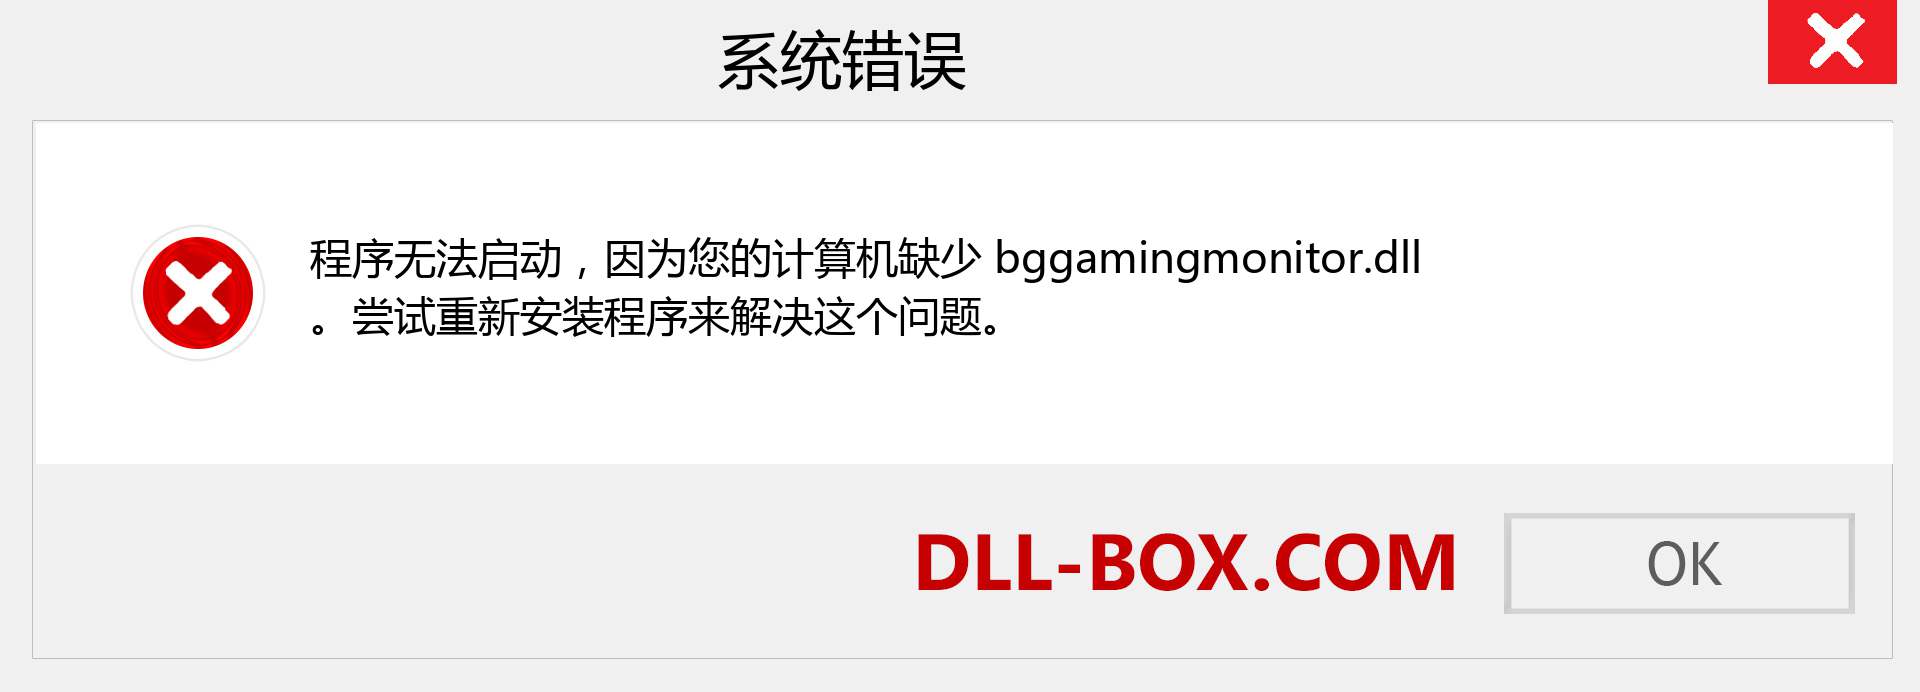 bggamingmonitor.dll 文件丢失？。 适用于 Windows 7、8、10 的下载 - 修复 Windows、照片、图像上的 bggamingmonitor dll 丢失错误